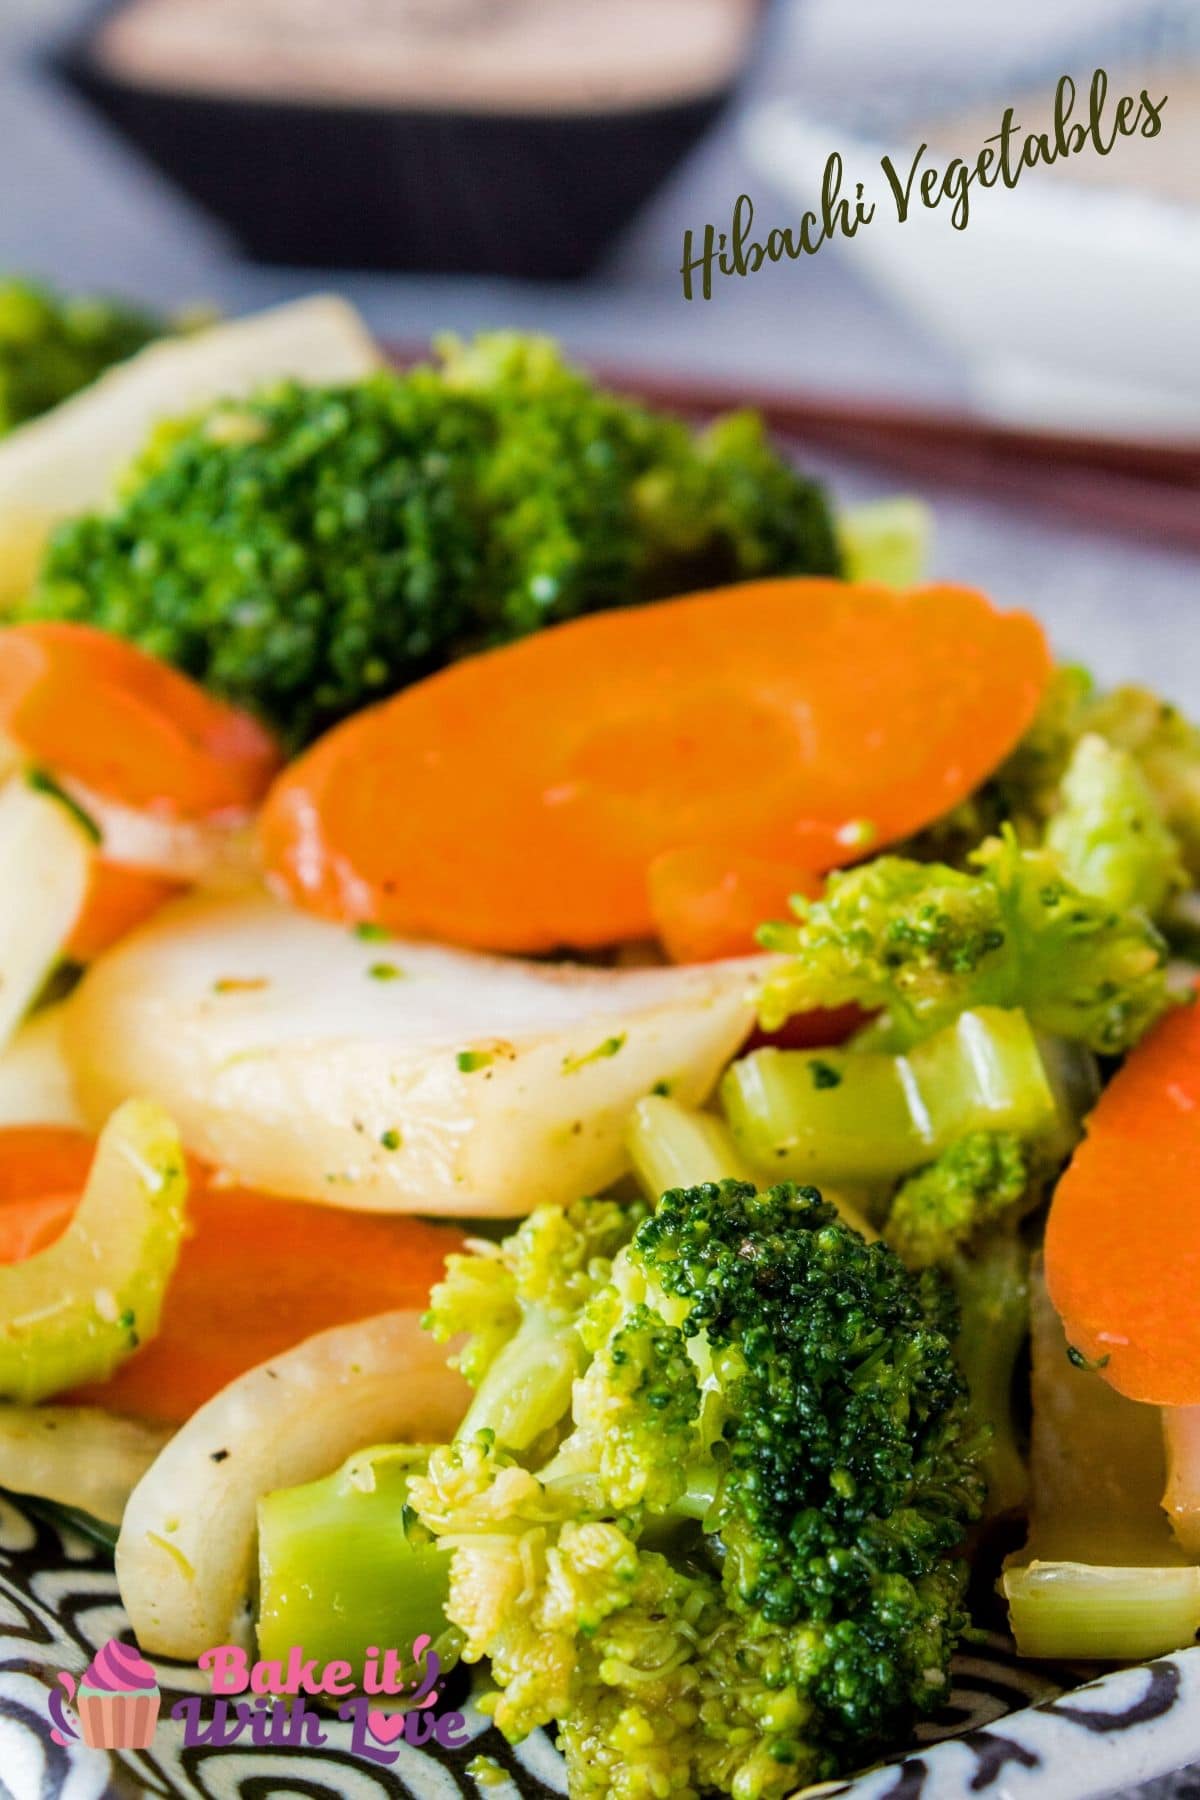 Вкусные обжаренные овощи в стиле хибачи - отличный способ дополнить ваш ужин!